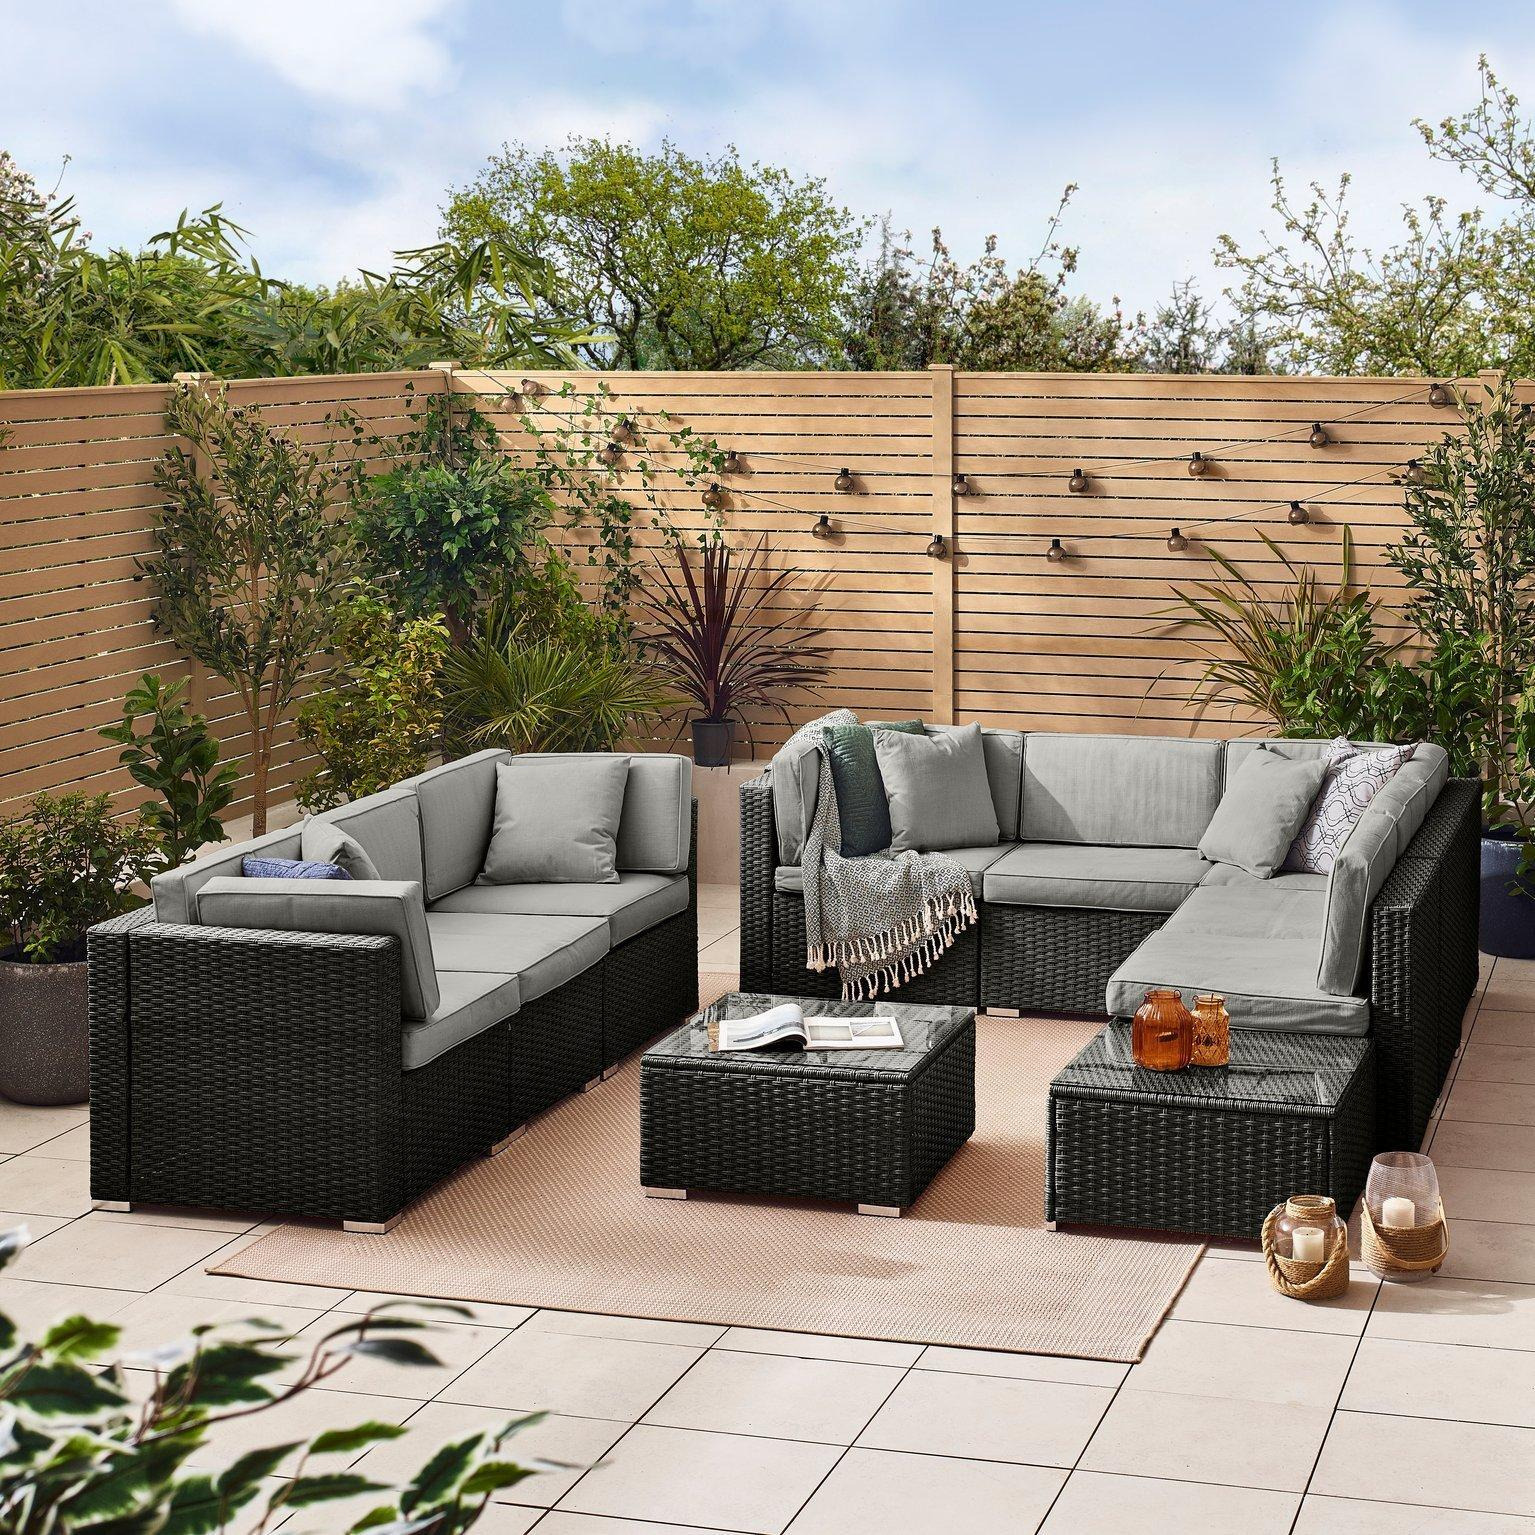 Orlando 8 Seat Modular Outdoor Garden Sofa - PE Rattan Garden Sofa with Cushions - Two Garden Coffee Table - image 1